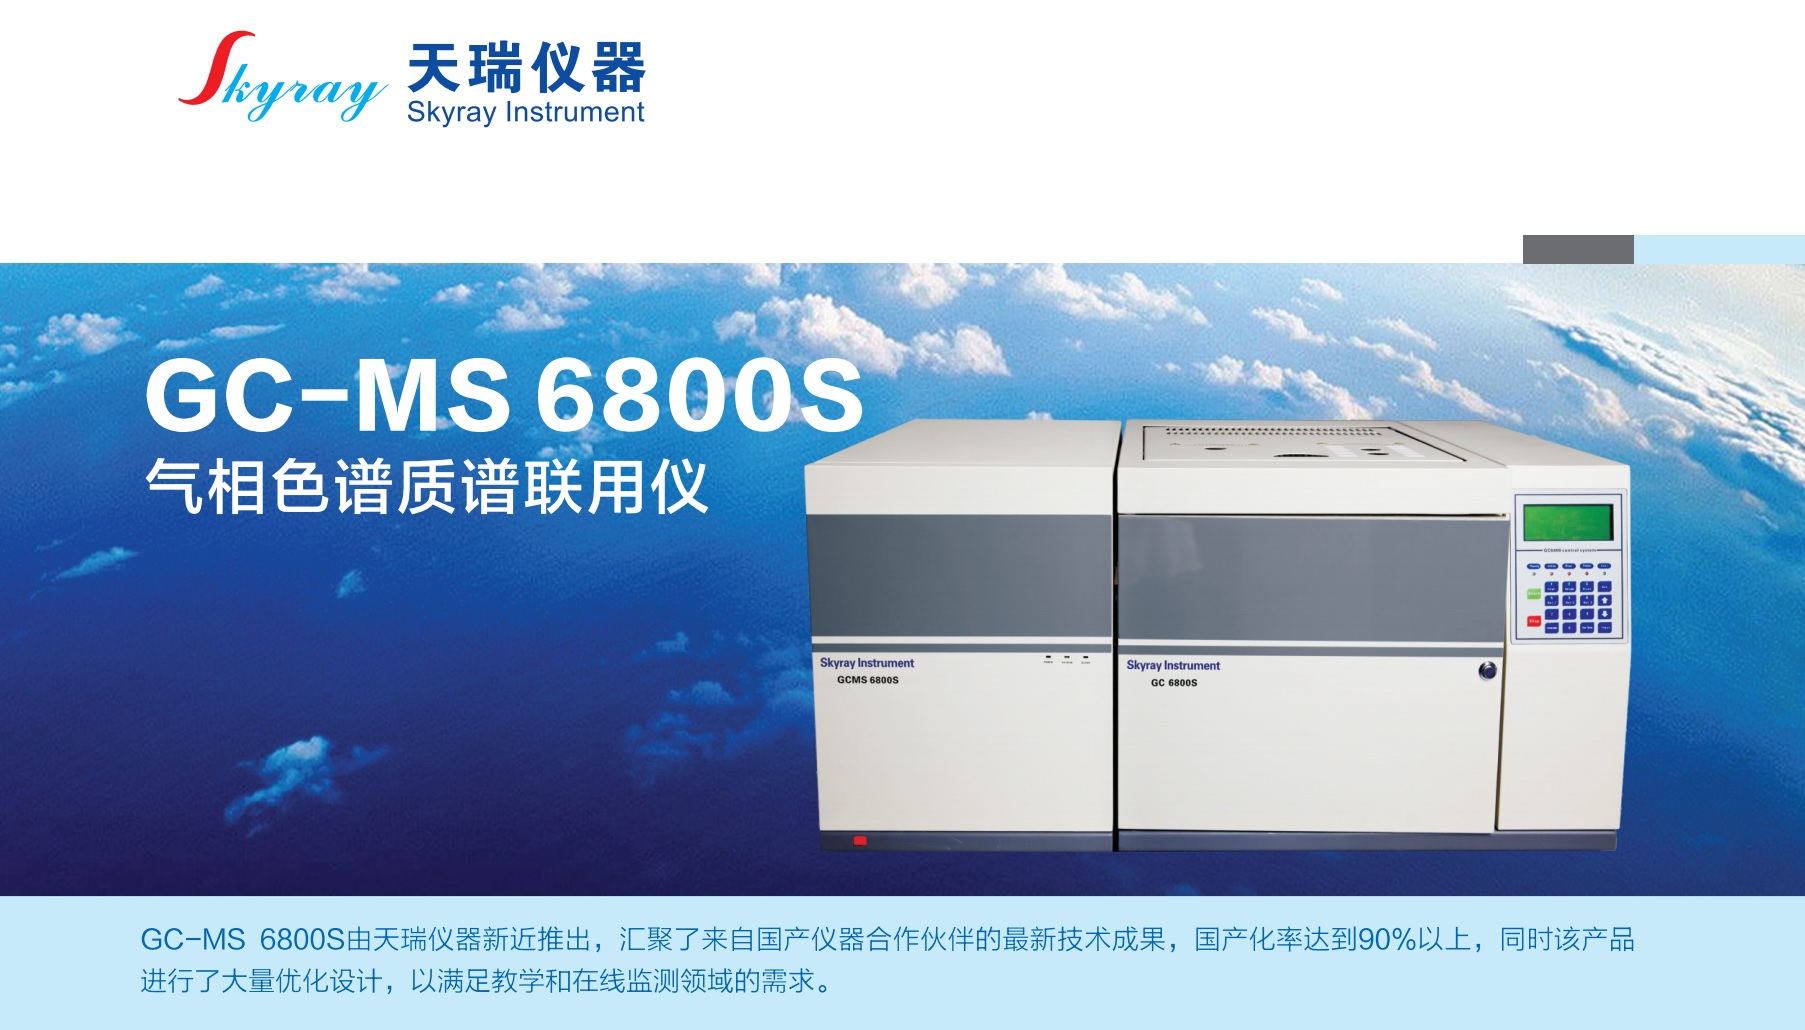 江苏天瑞仪器股份有限公司-GC-MS6800S 